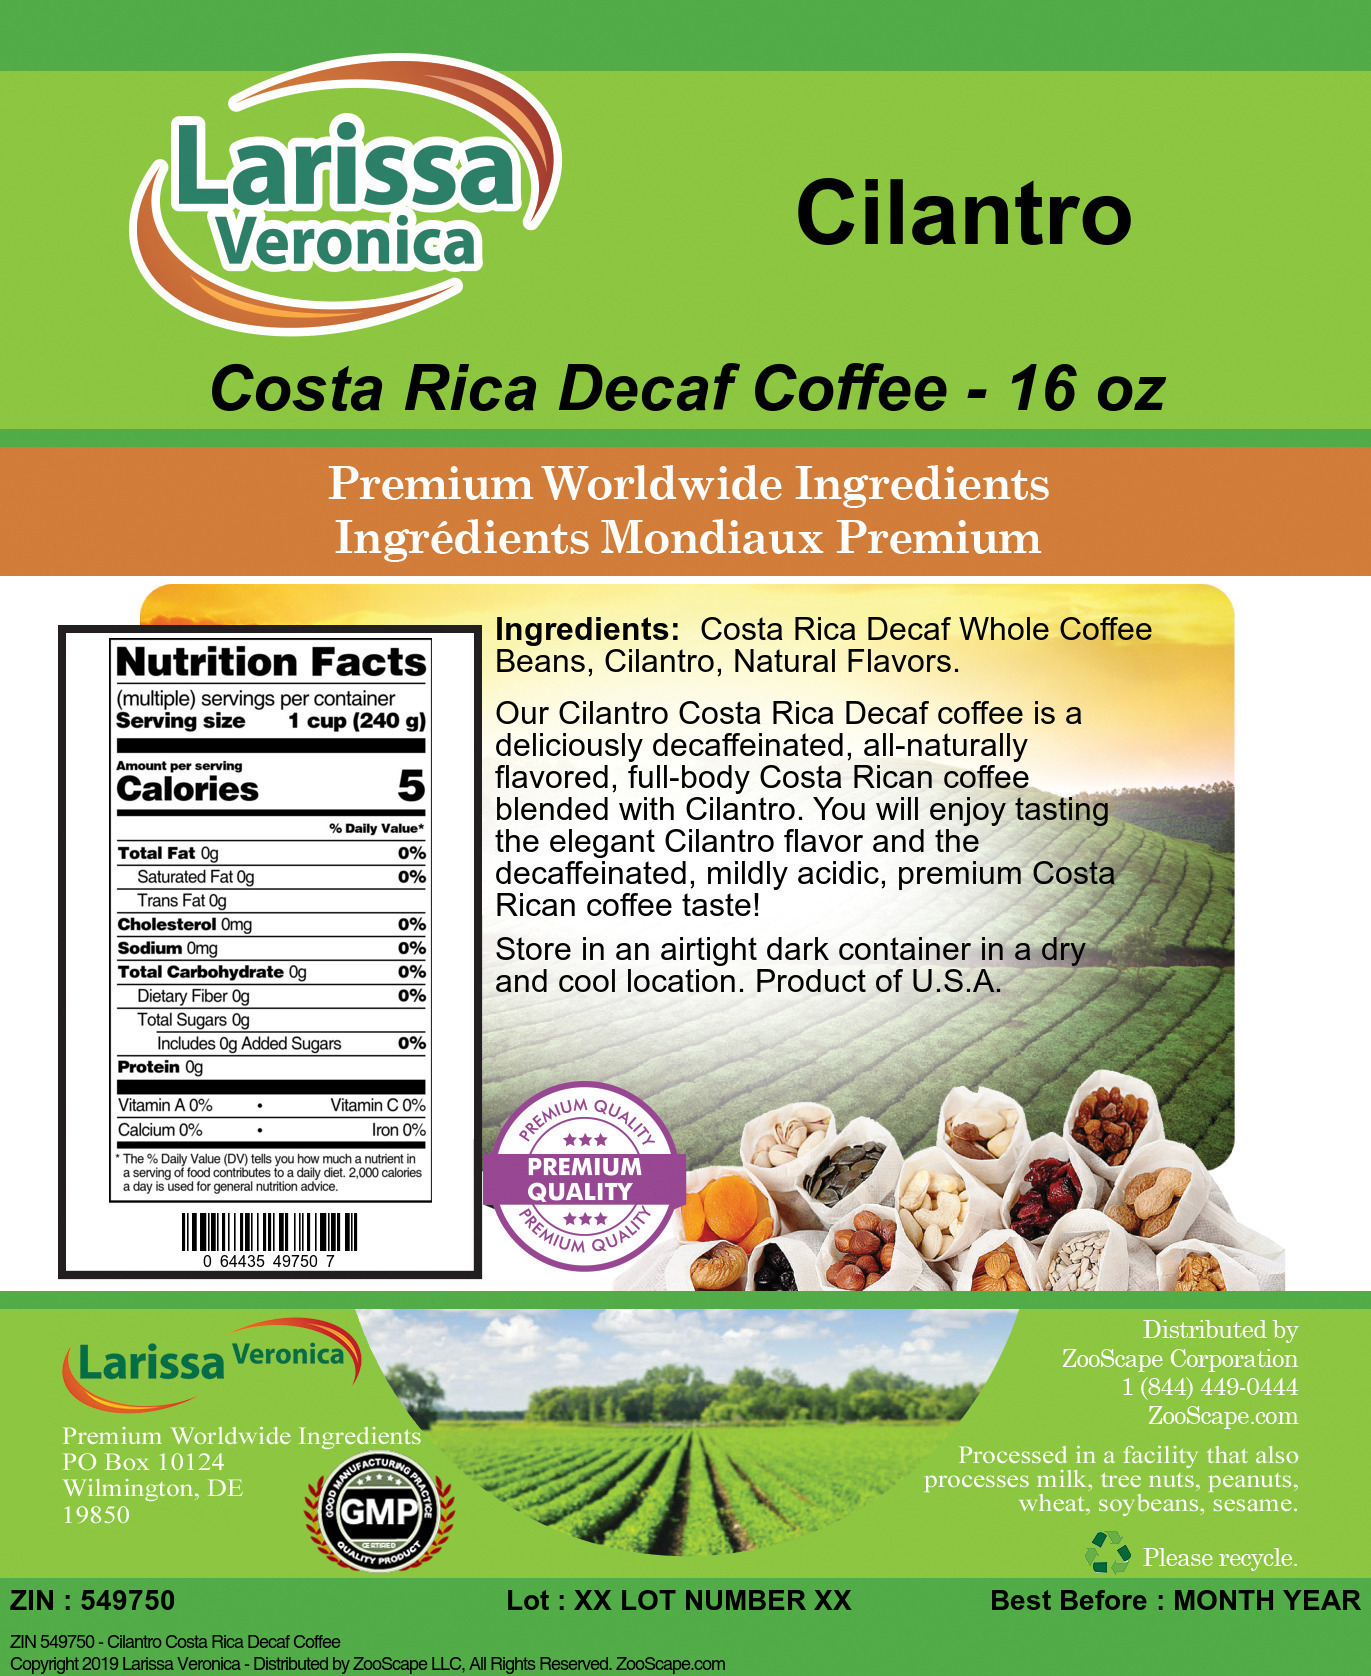 Cilantro Costa Rica Decaf Coffee - Label